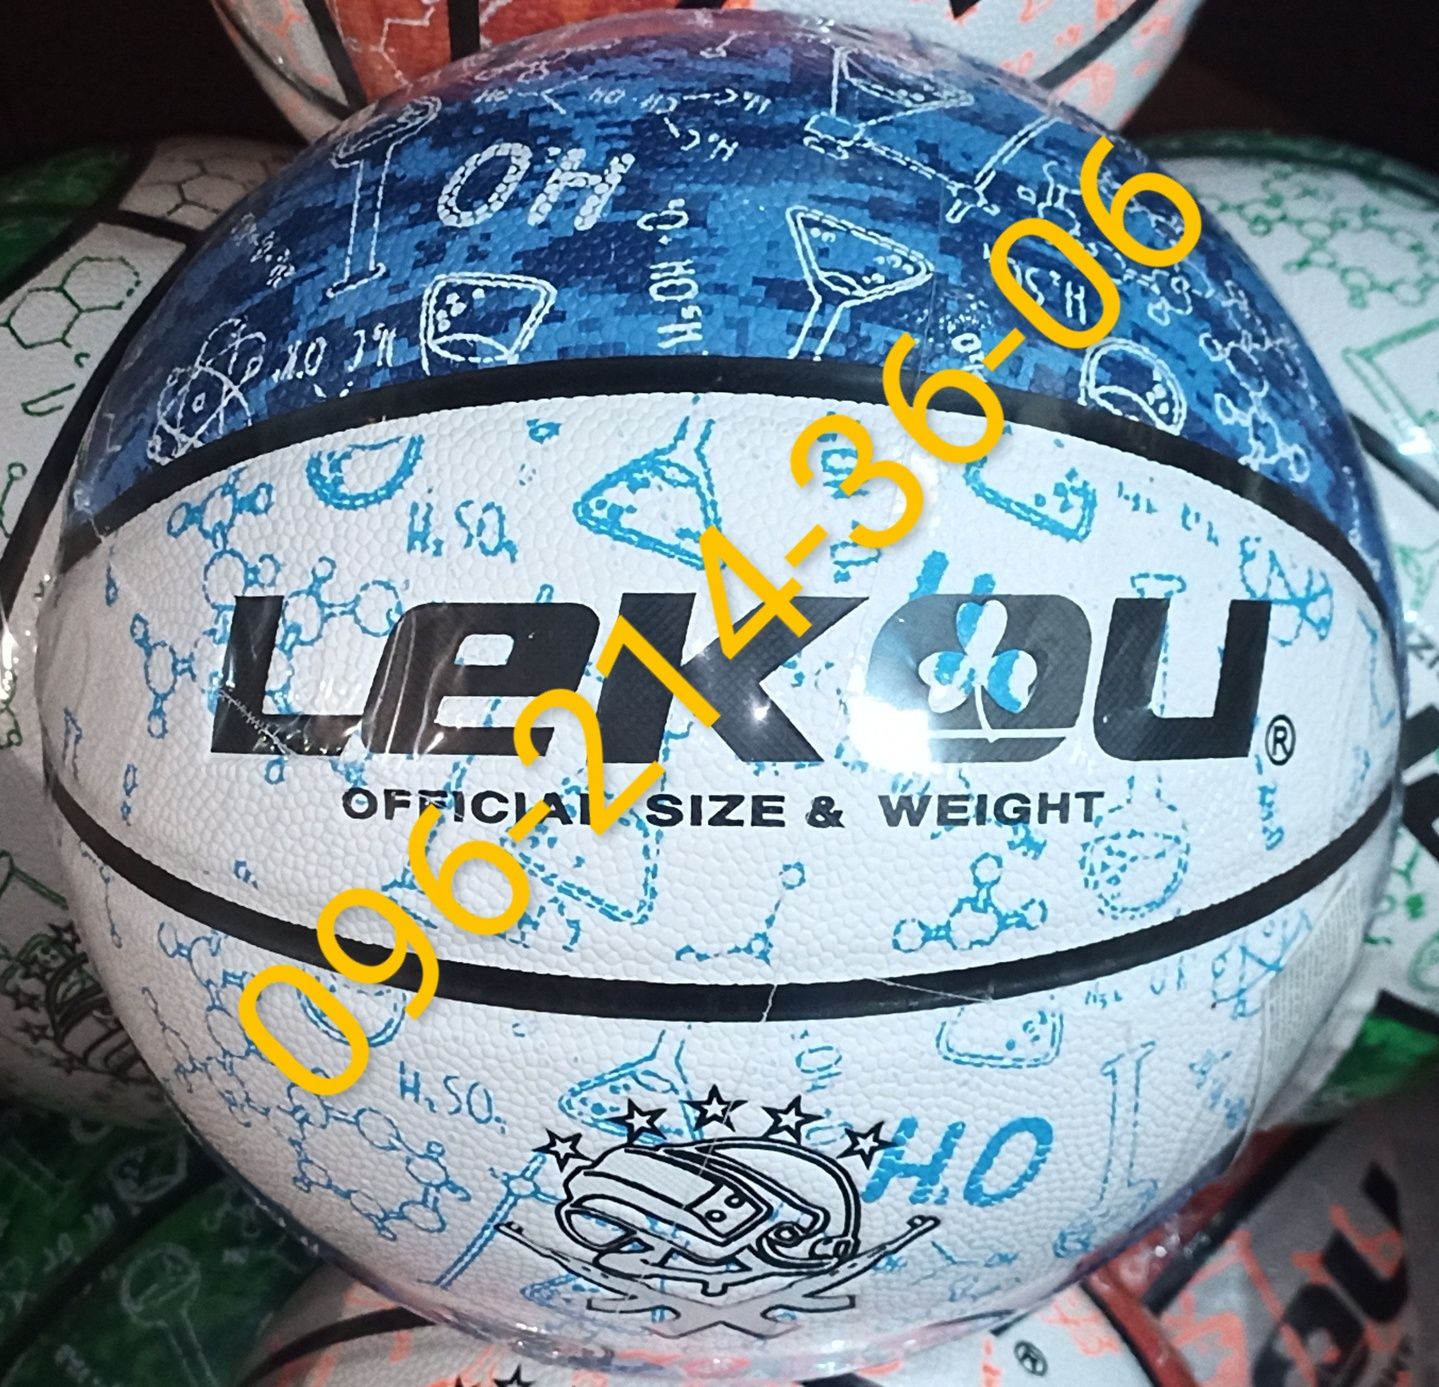 Мяч баскетбольный для детей и взрослых LEKOU. Отличного качества!